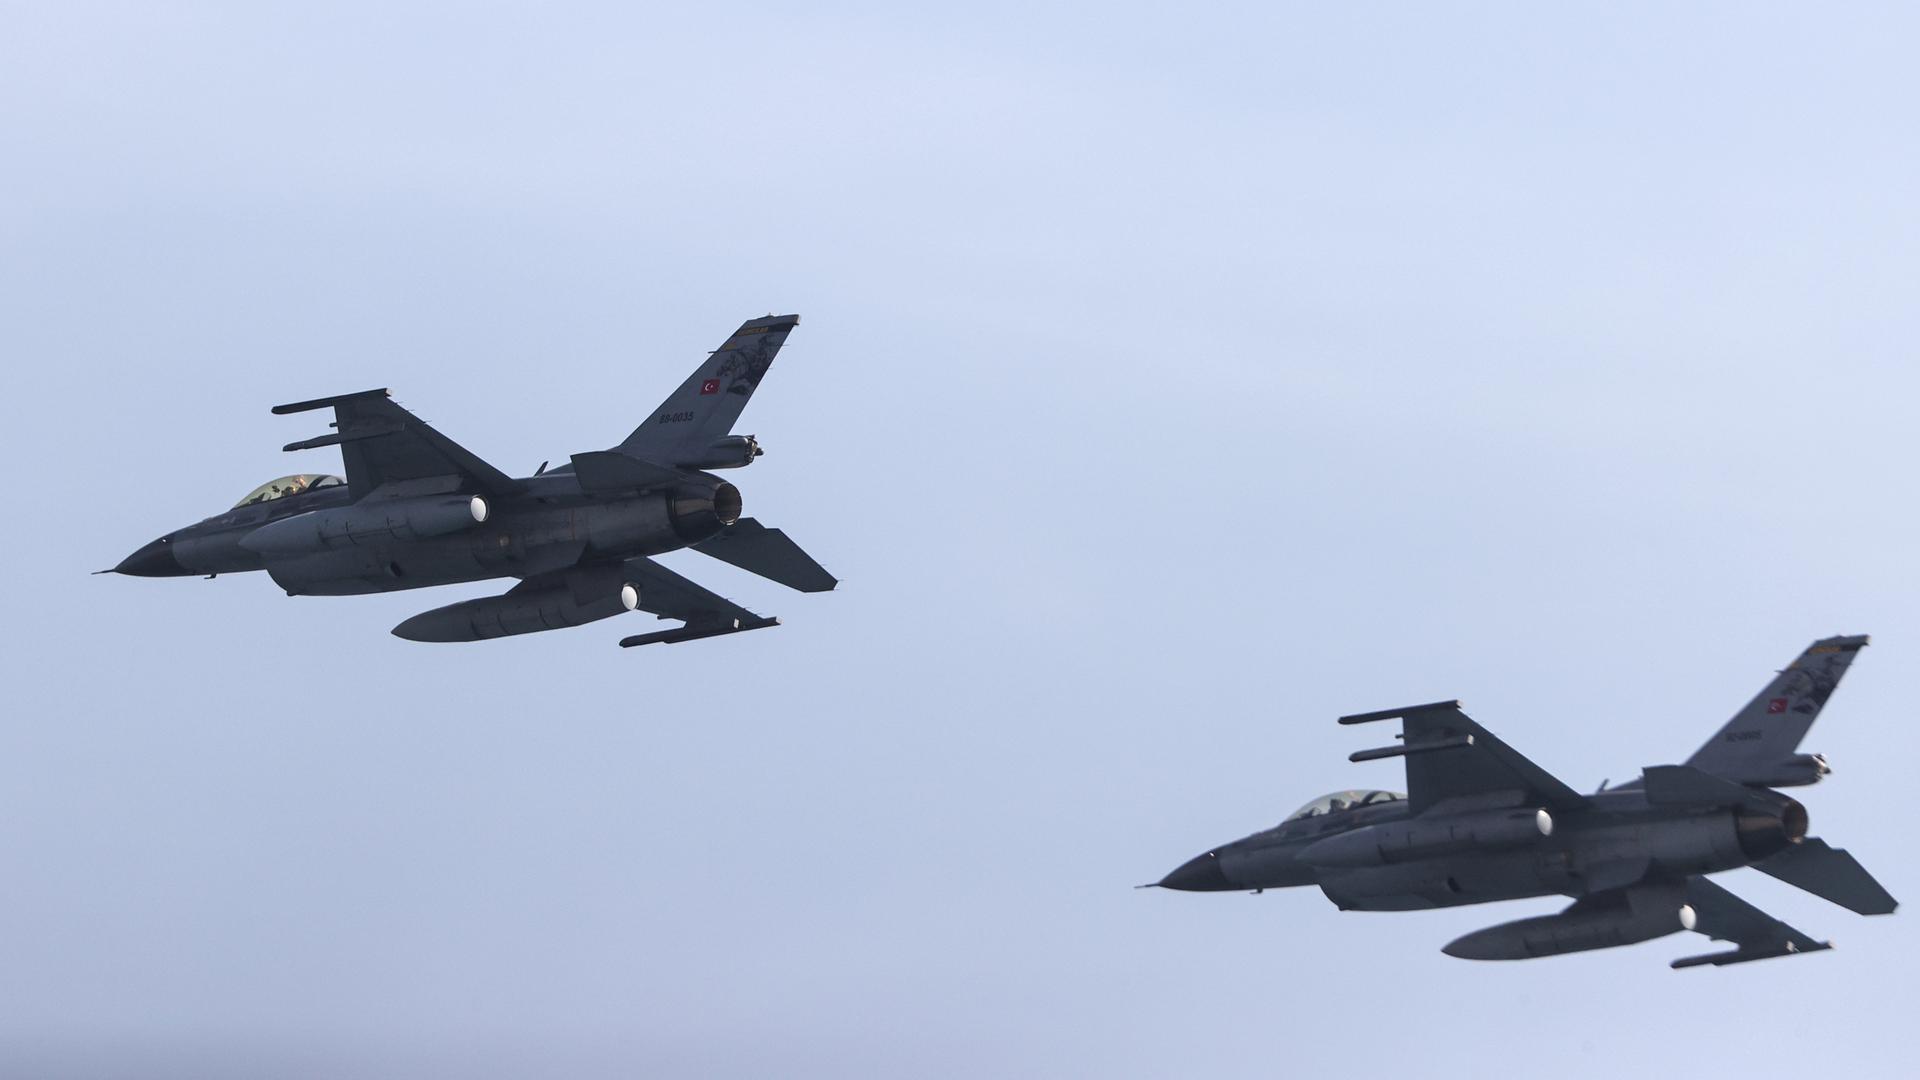 Zu sehen sind zwei F16-Kampfflugzeuge am Himmel in Aktion.